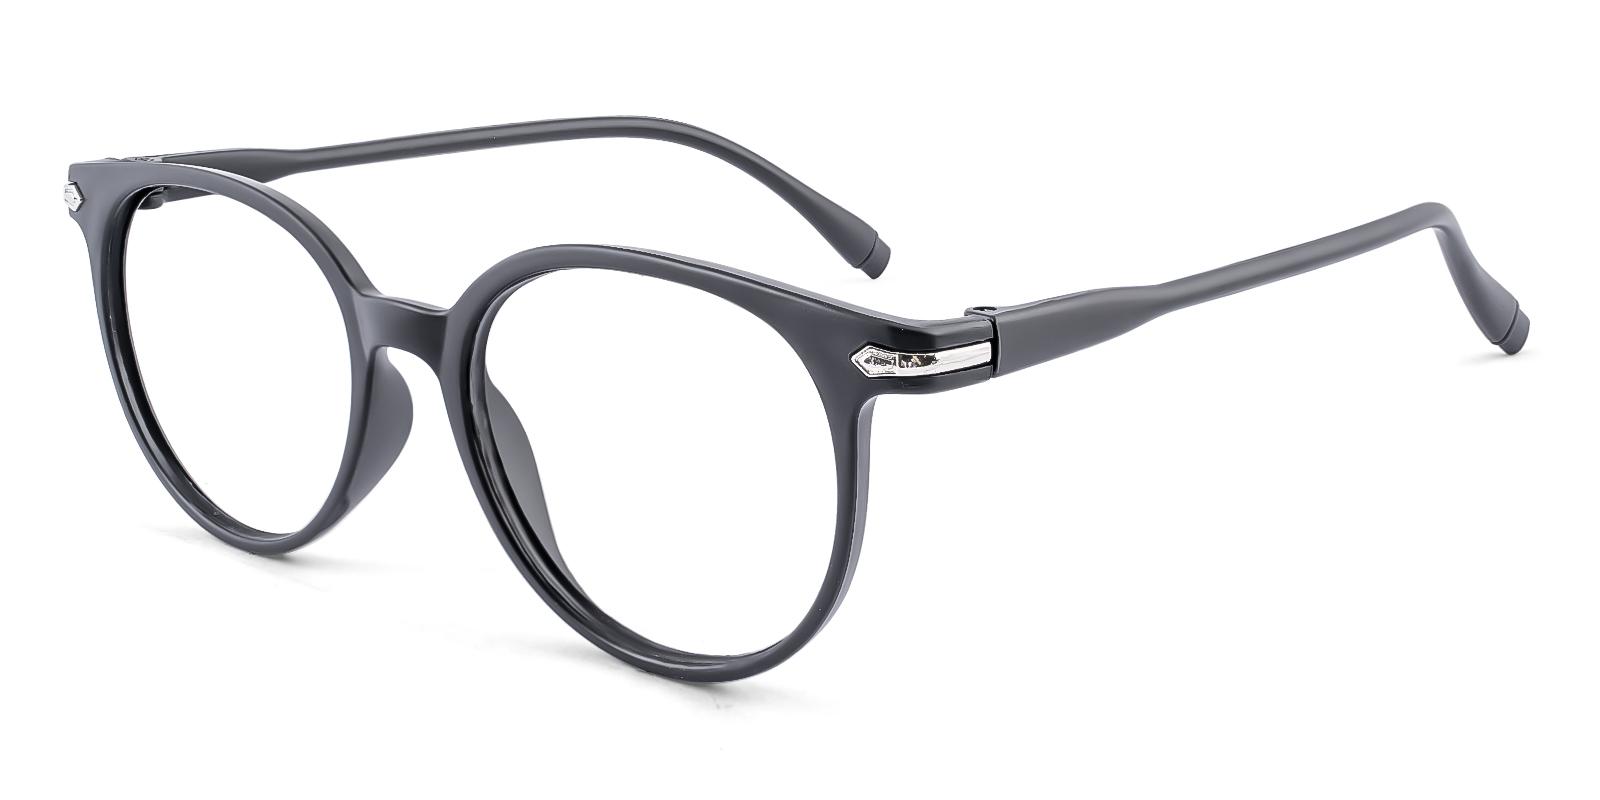 Frommular Black Plastic Eyeglasses , UniversalBridgeFit Frames from ABBE Glasses